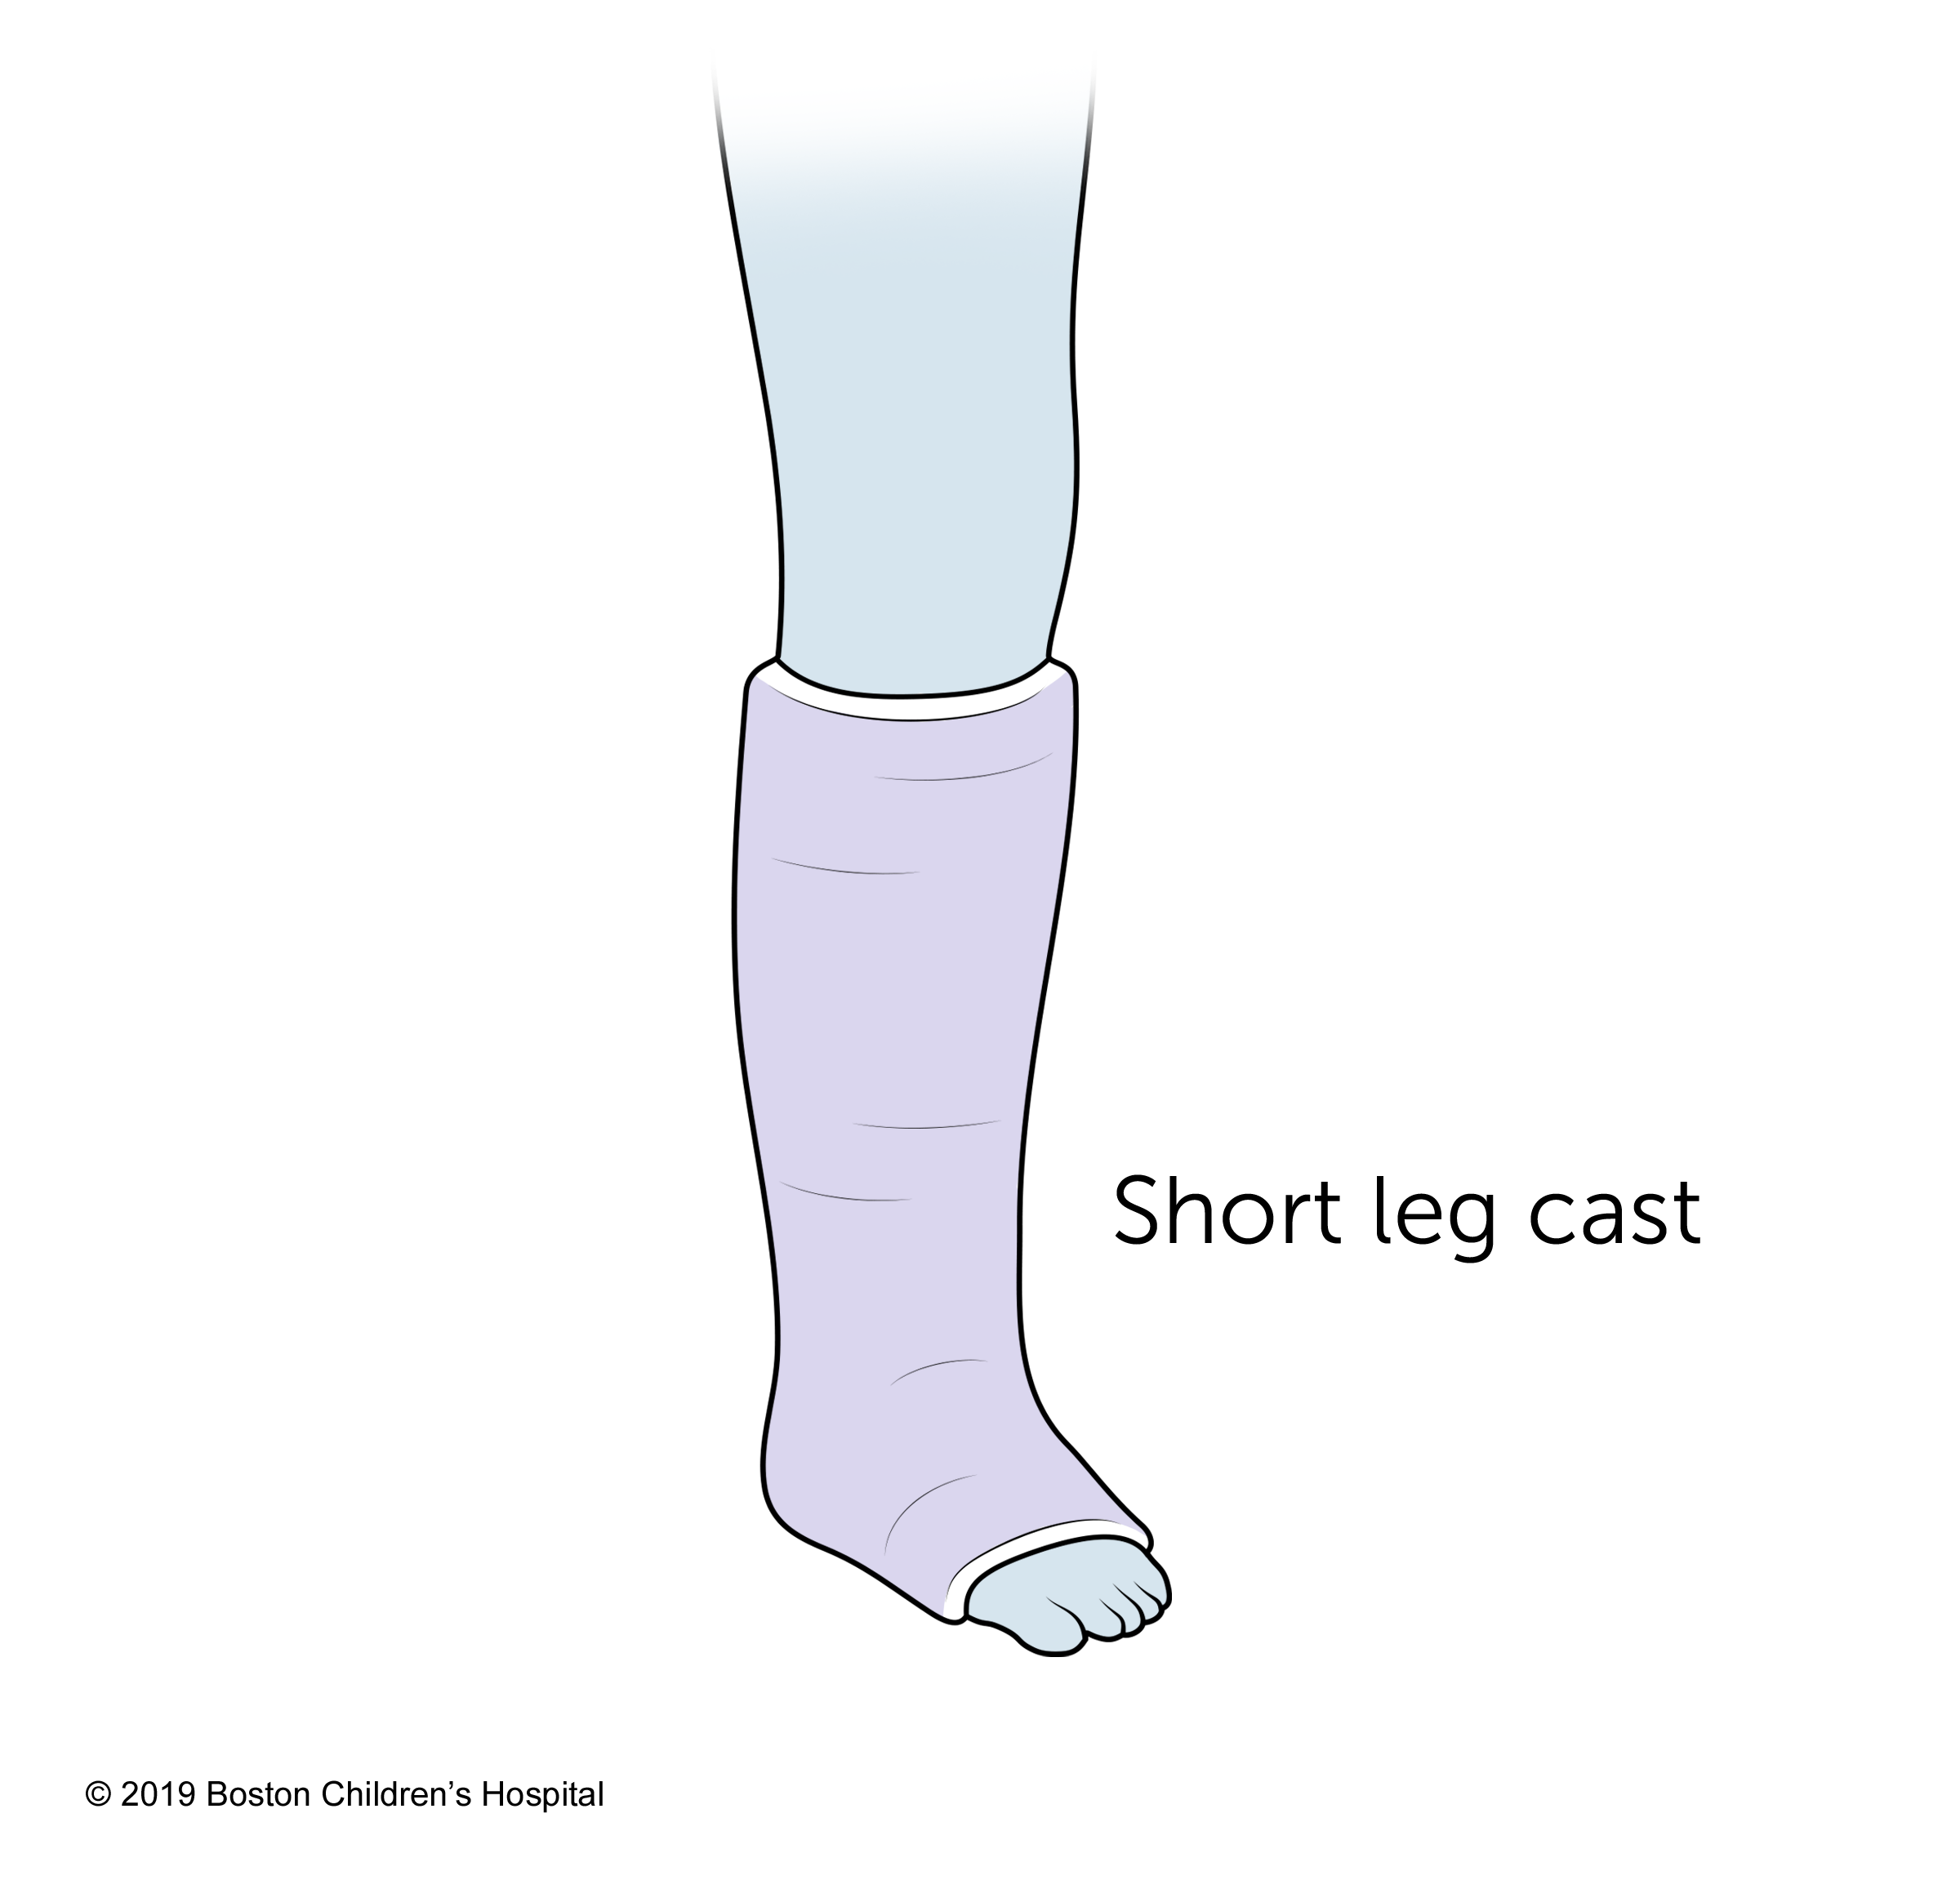 A short leg cast.